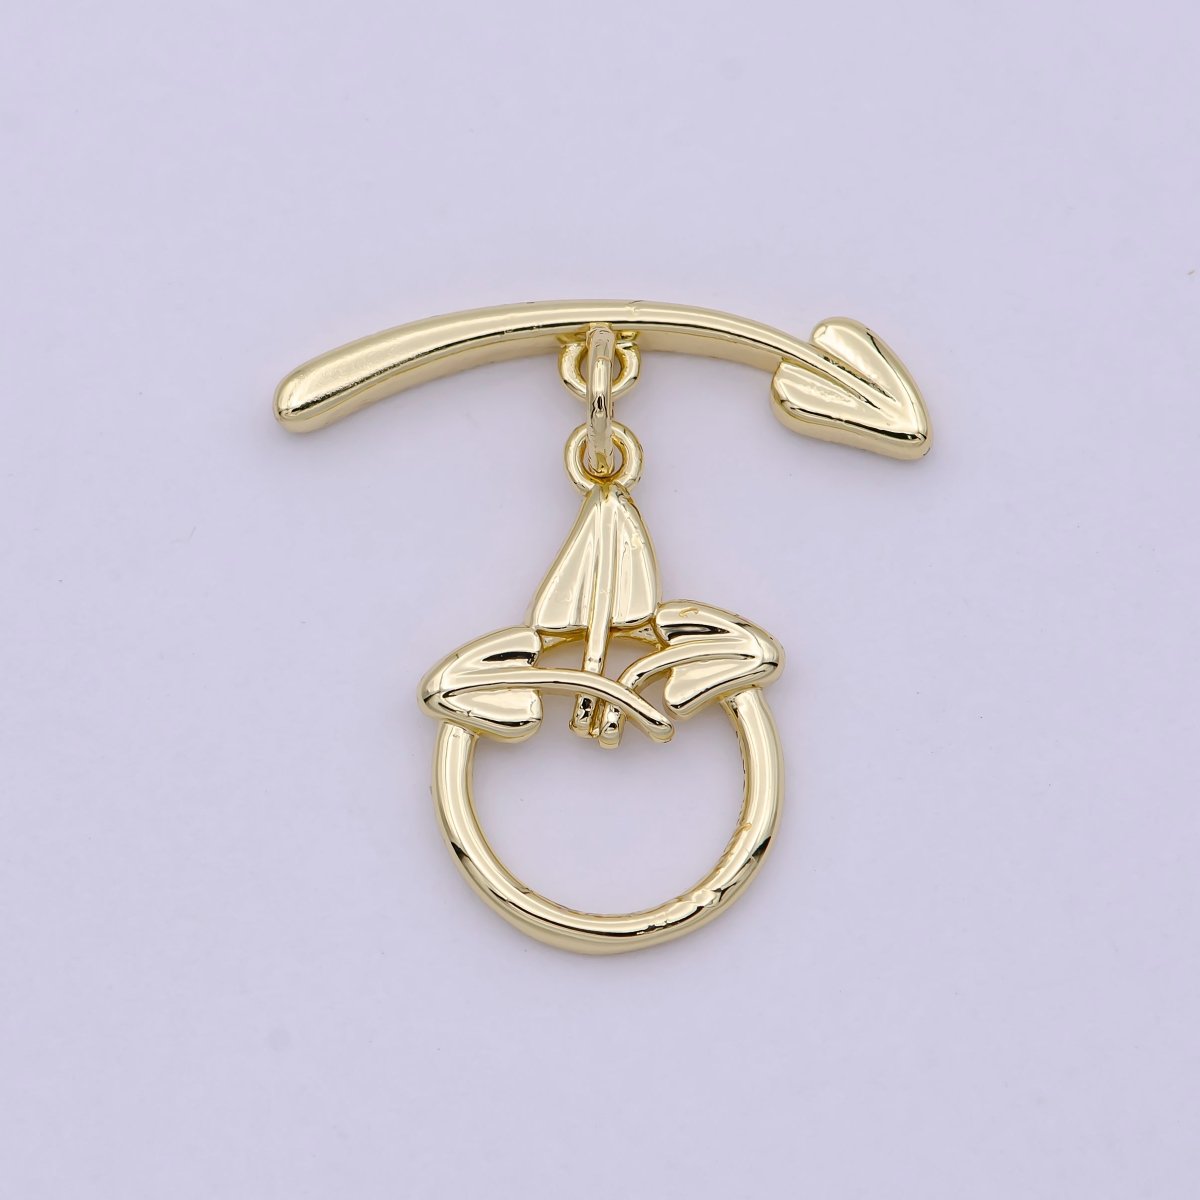 Wholesale Gold Toggle Clasp, Arrow OT Clasp Fancy Design OT Clasp Bulk Supply for Bracelet Necklace Component L-628 - DLUXCA